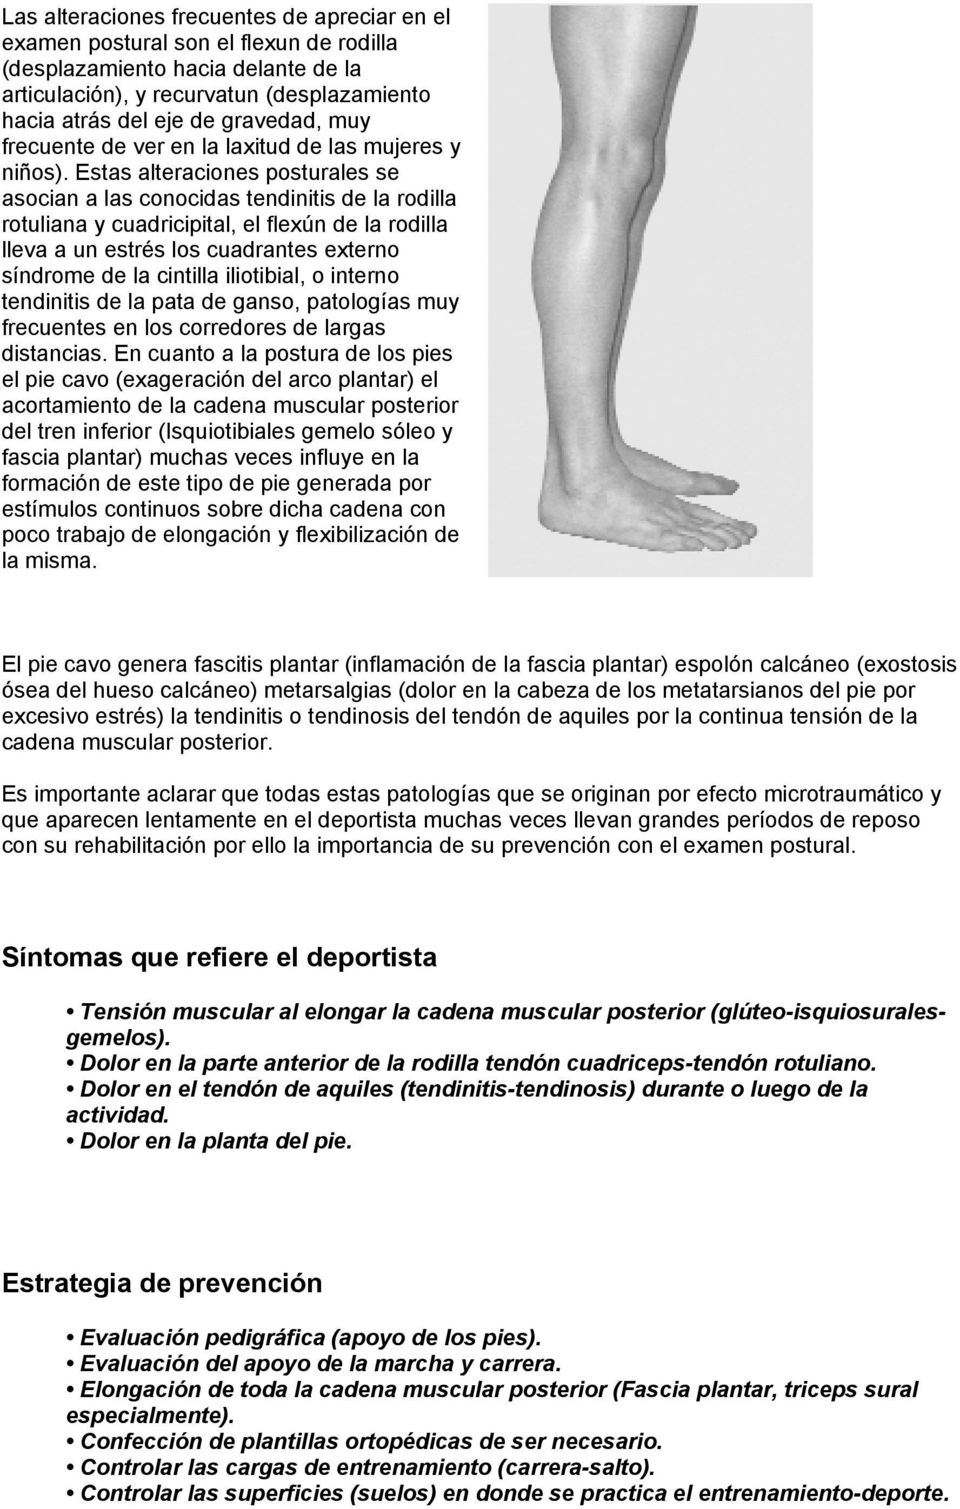 Estas alteraciones posturales se asocian a las conocidas tendinitis de la rodilla rotuliana y cuadricipital, el flexún de la rodilla lleva a un estrés los cuadrantes externo síndrome de la cintilla